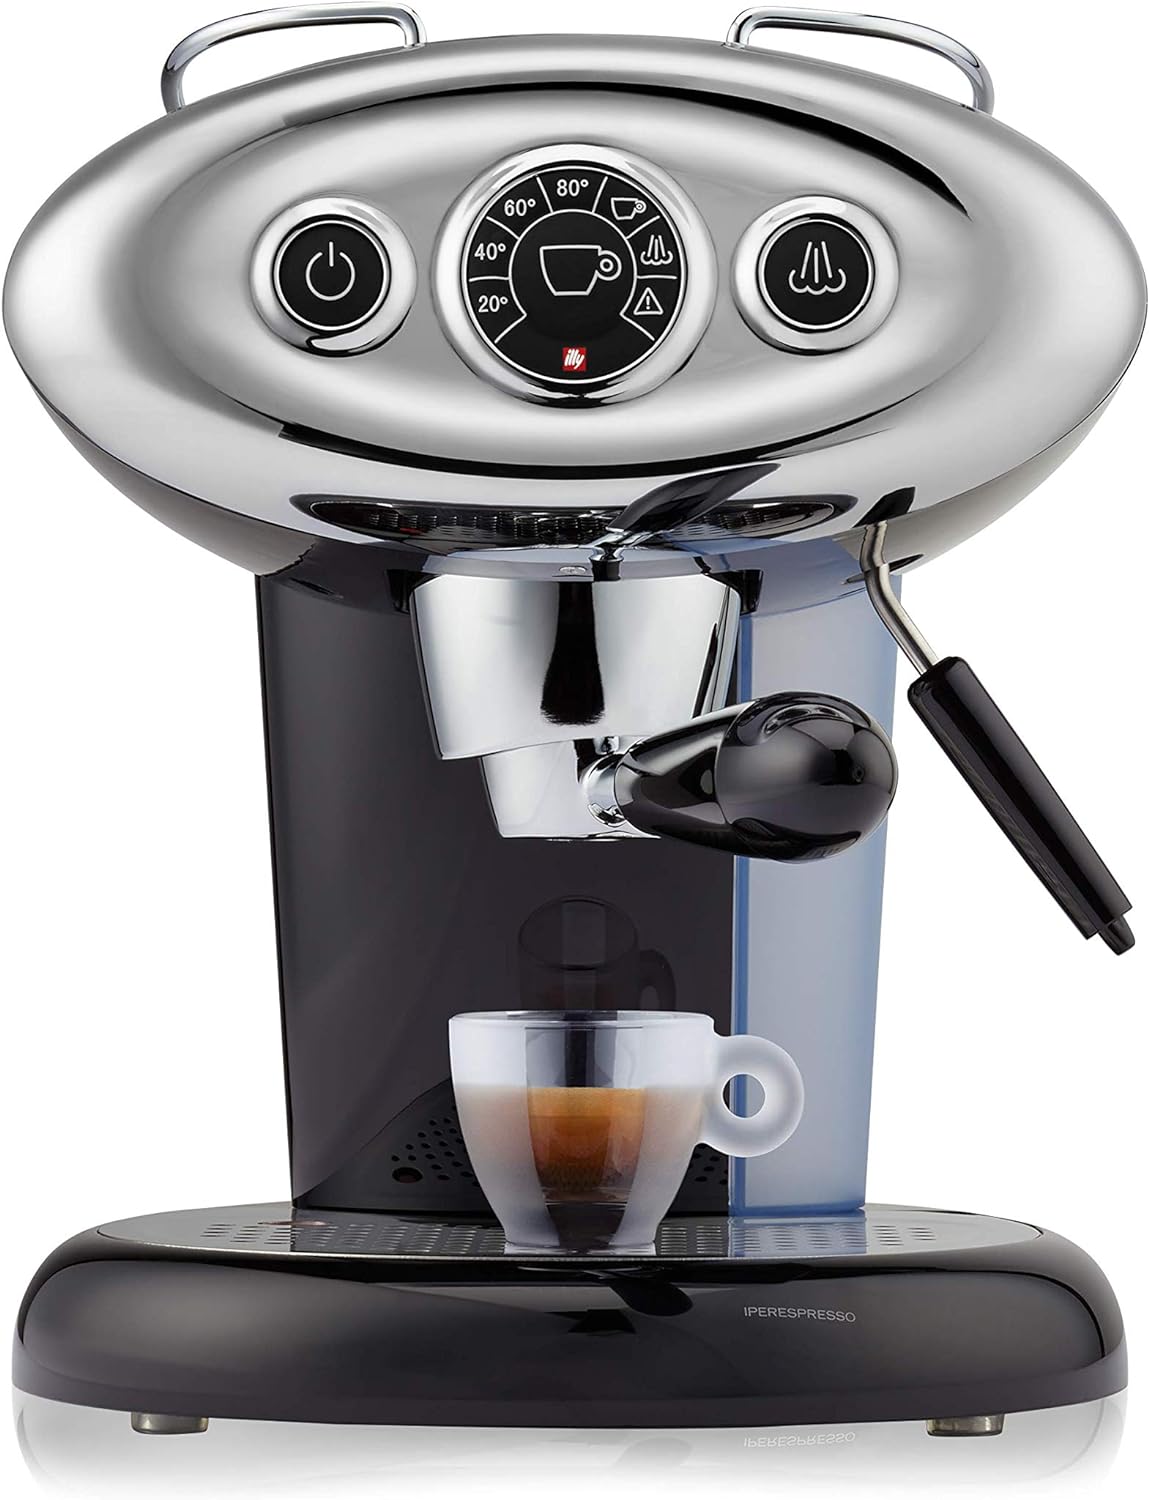 Die beste Espressomaschine von illy - Perfekter Espresso auf Knopfdruck